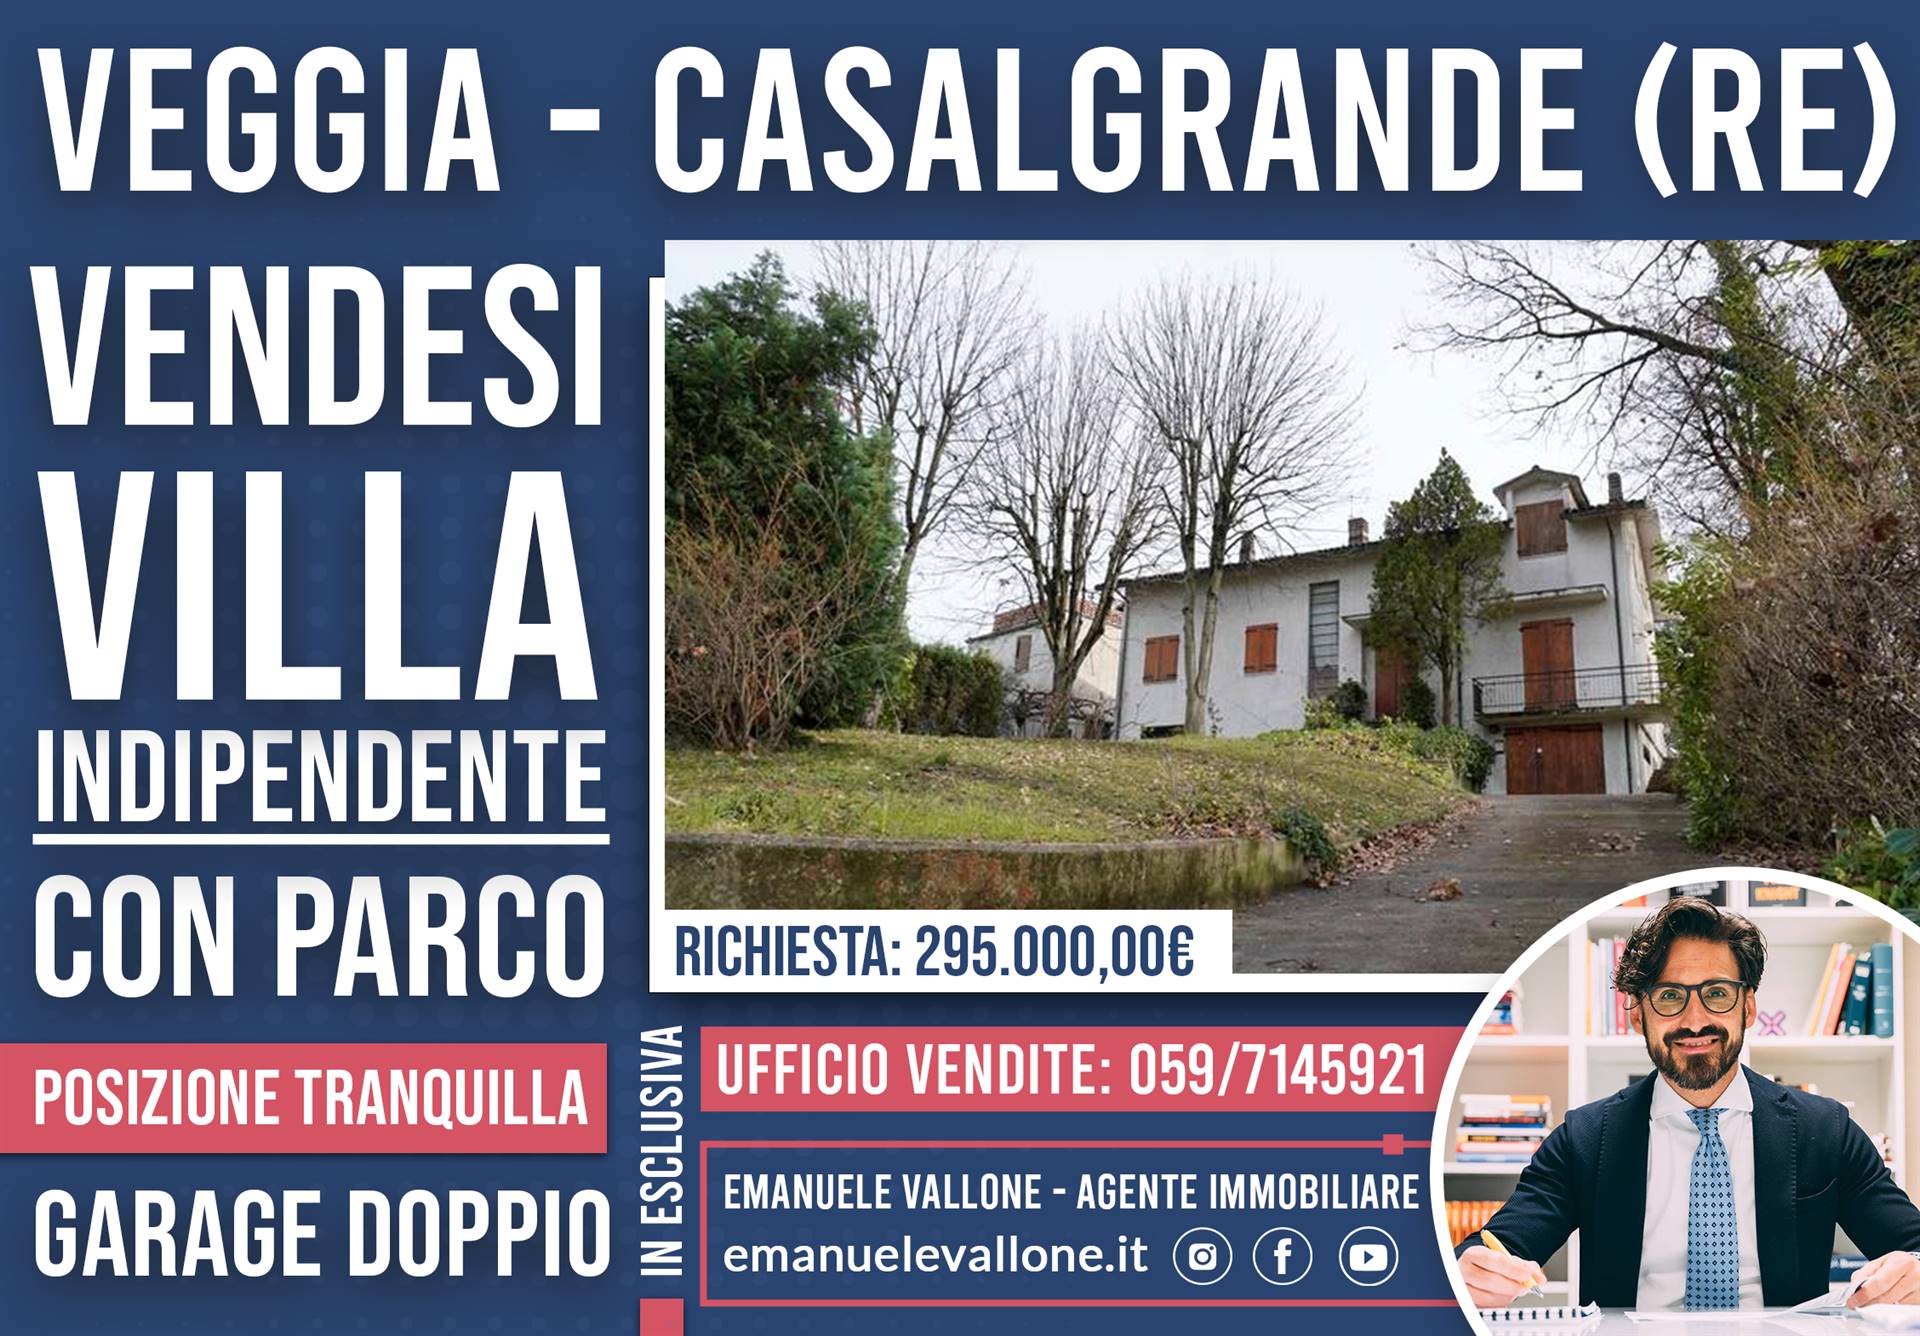 Emanuele Vallone - Agenzia Immobiliare Modena - Villa in Vendita a CASALGRANDE